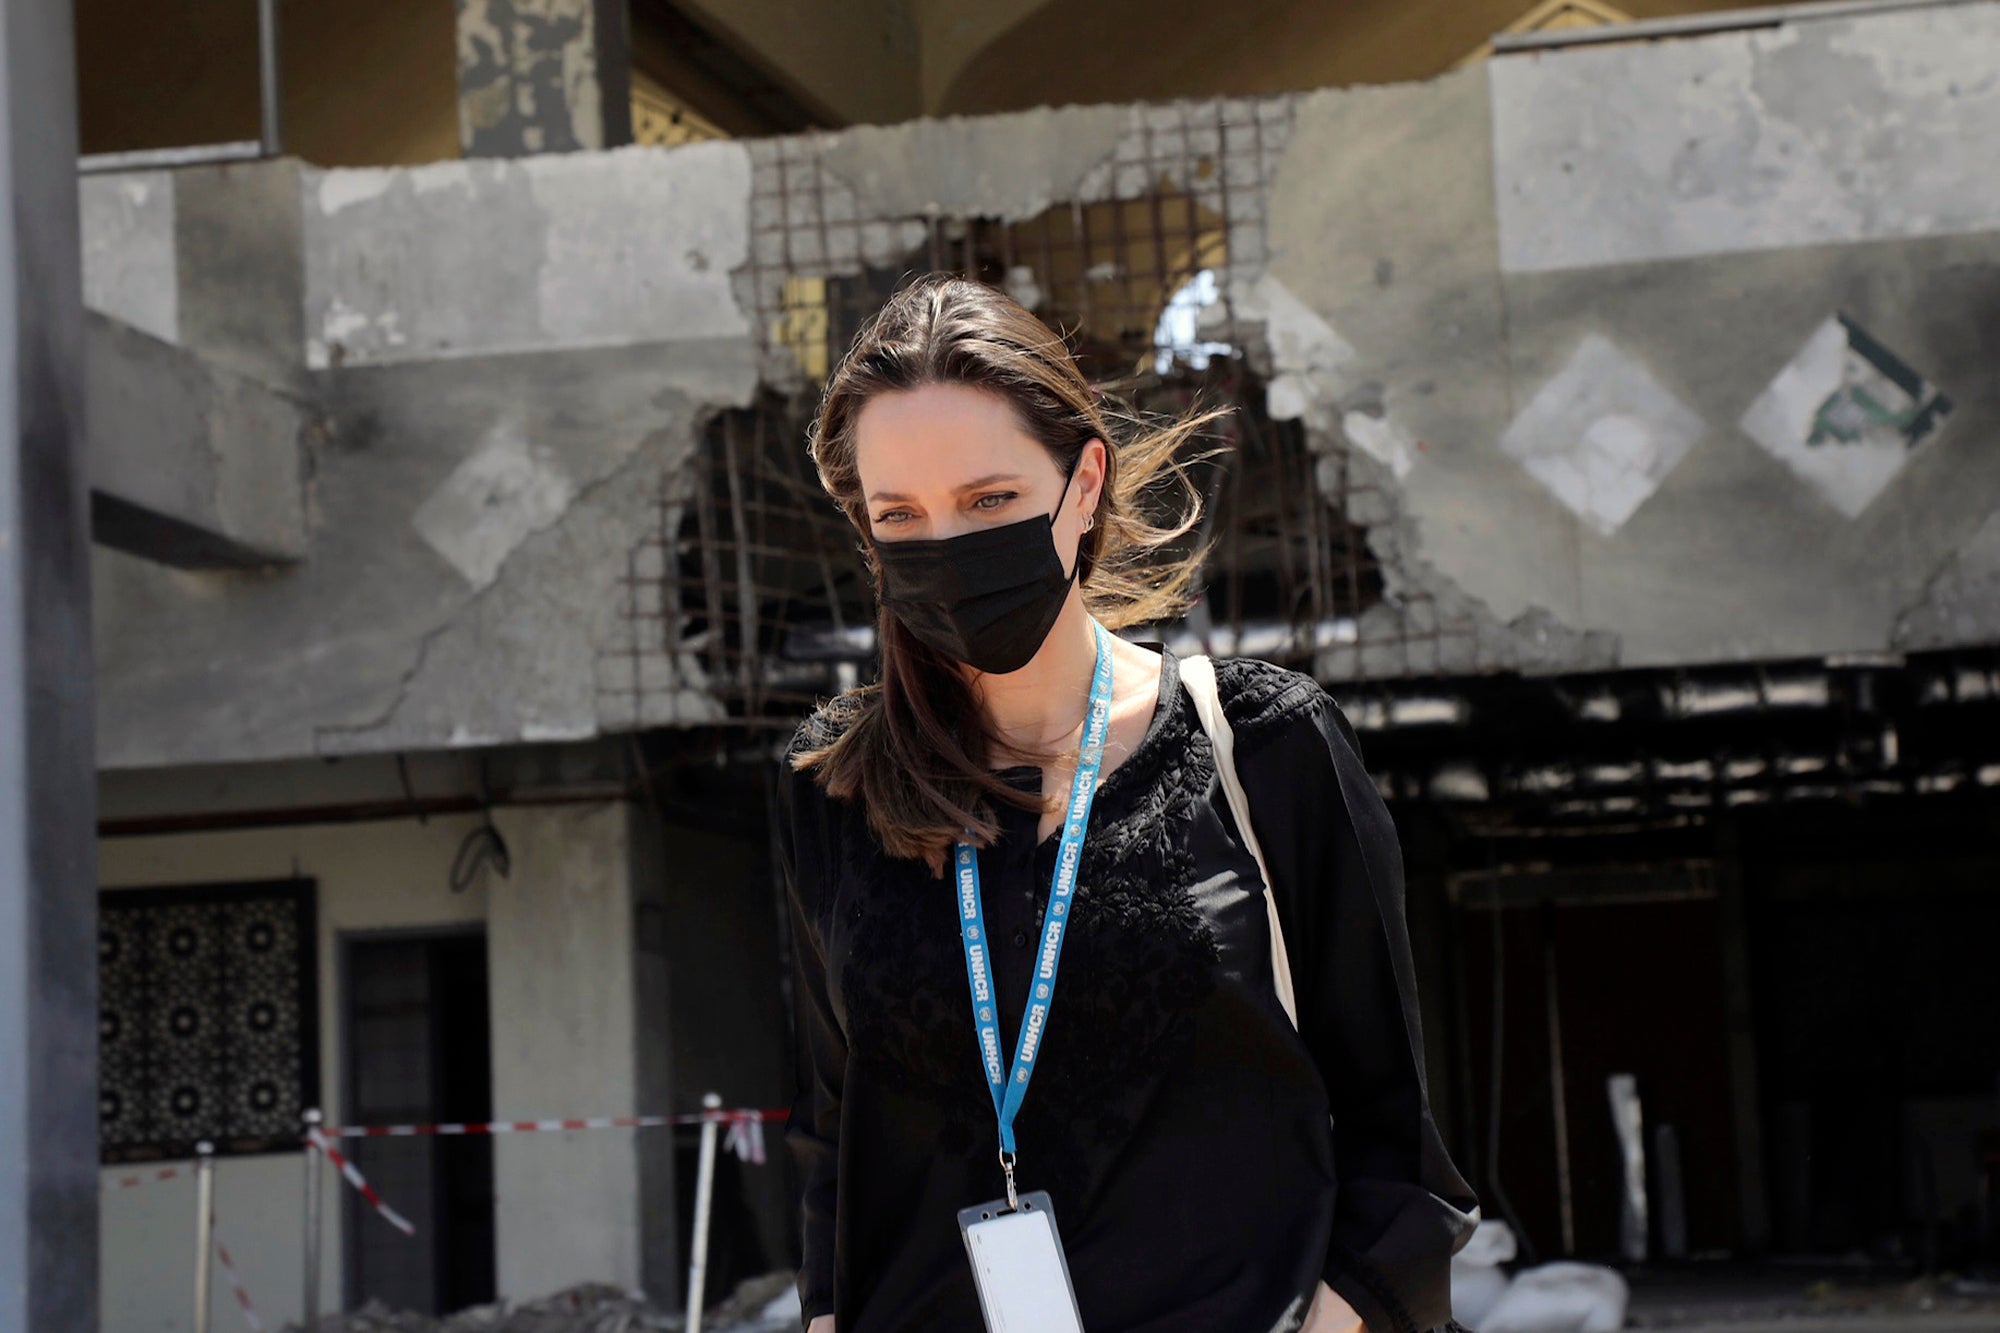 Yemen UNHCR Angelina Jolie